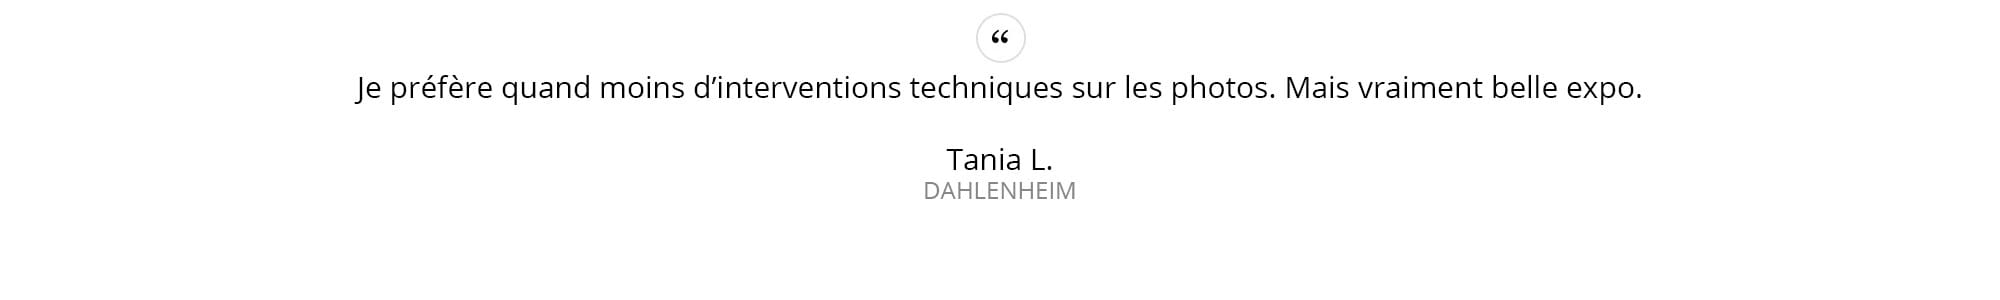 Tania-L.---DAHLENHEIM